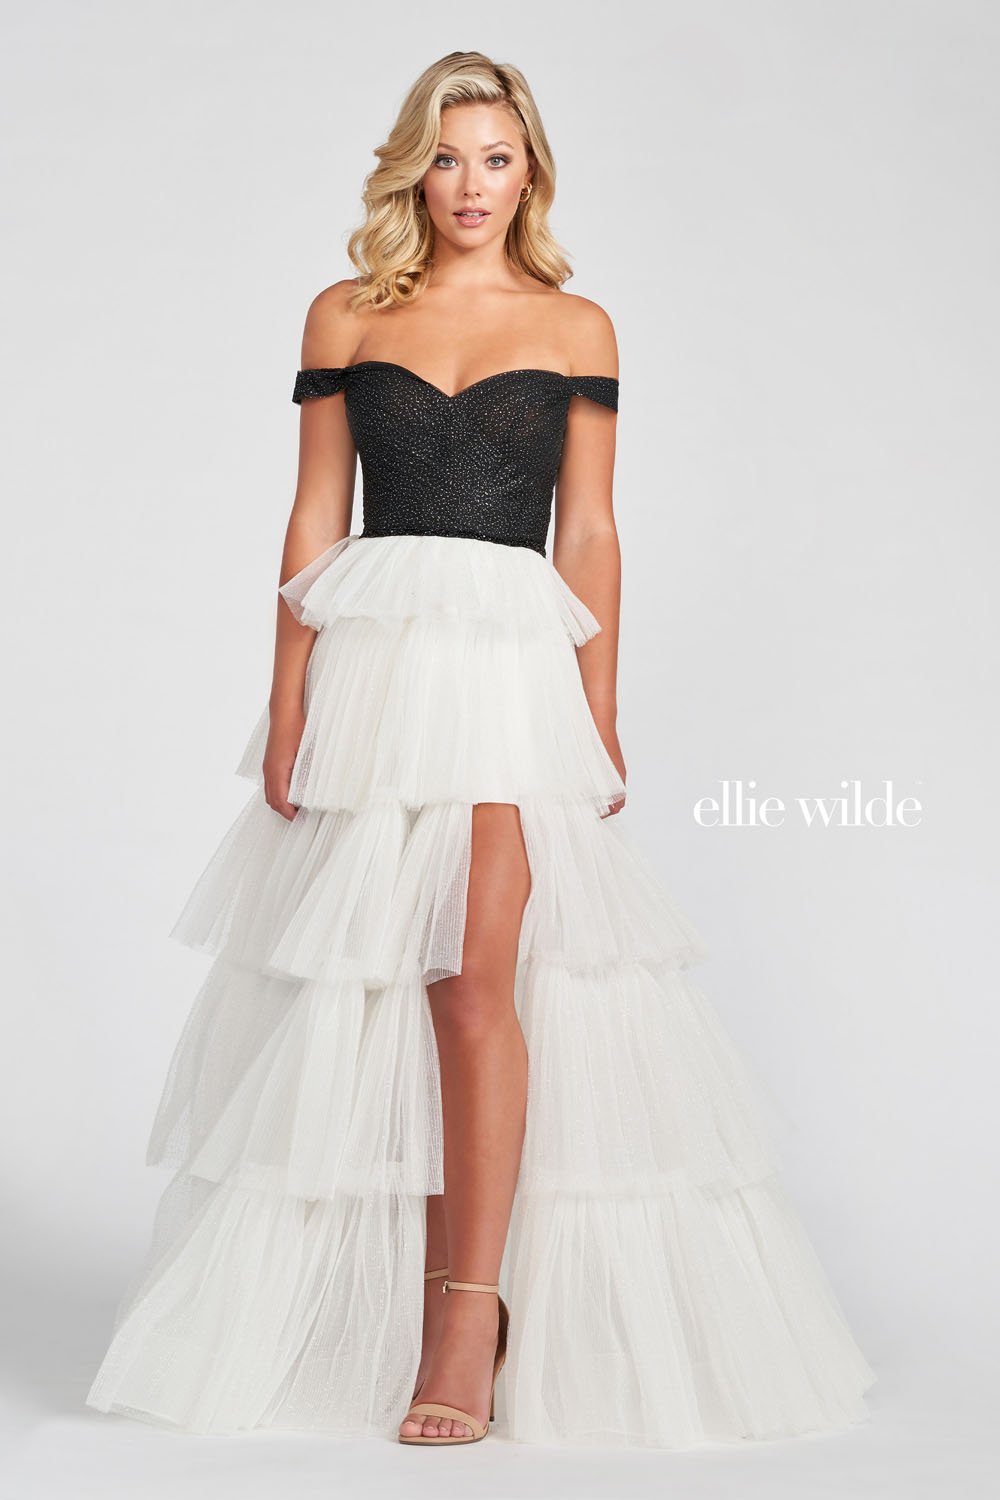 Ellie Wilde Black White EW122060 Prom Dress Image.  Black White formal dress.